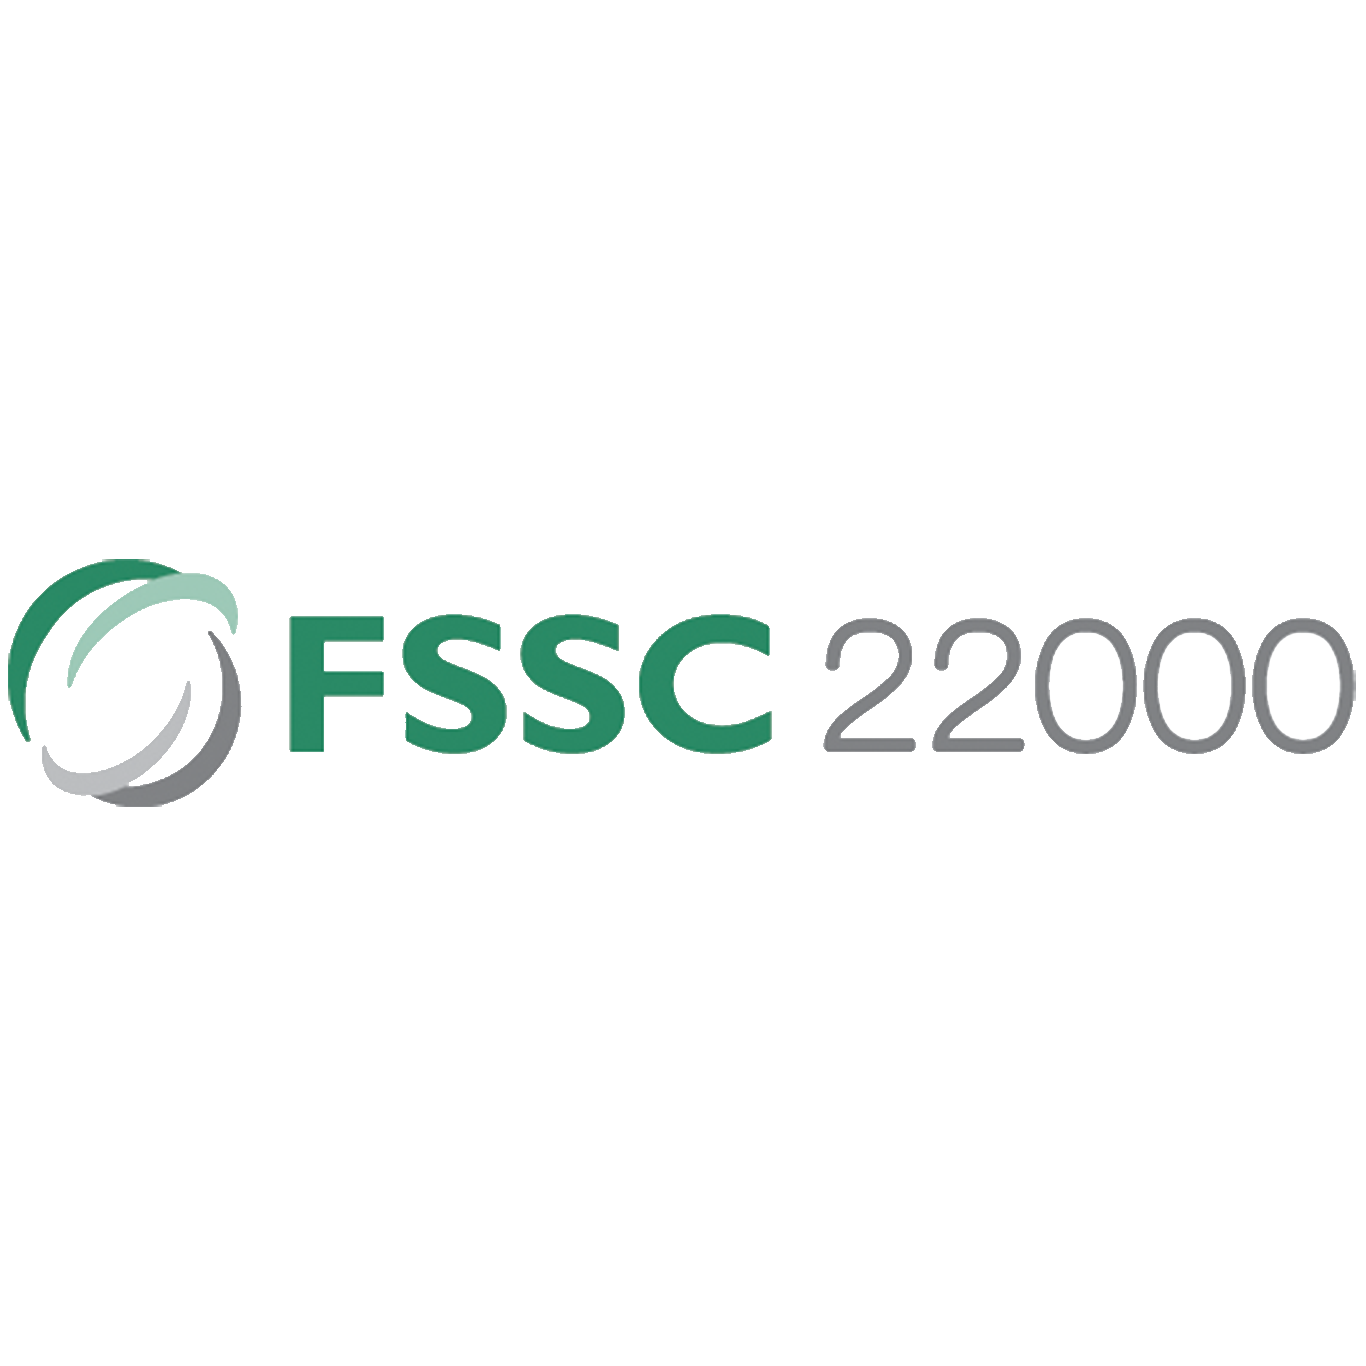 FSCC 22000 